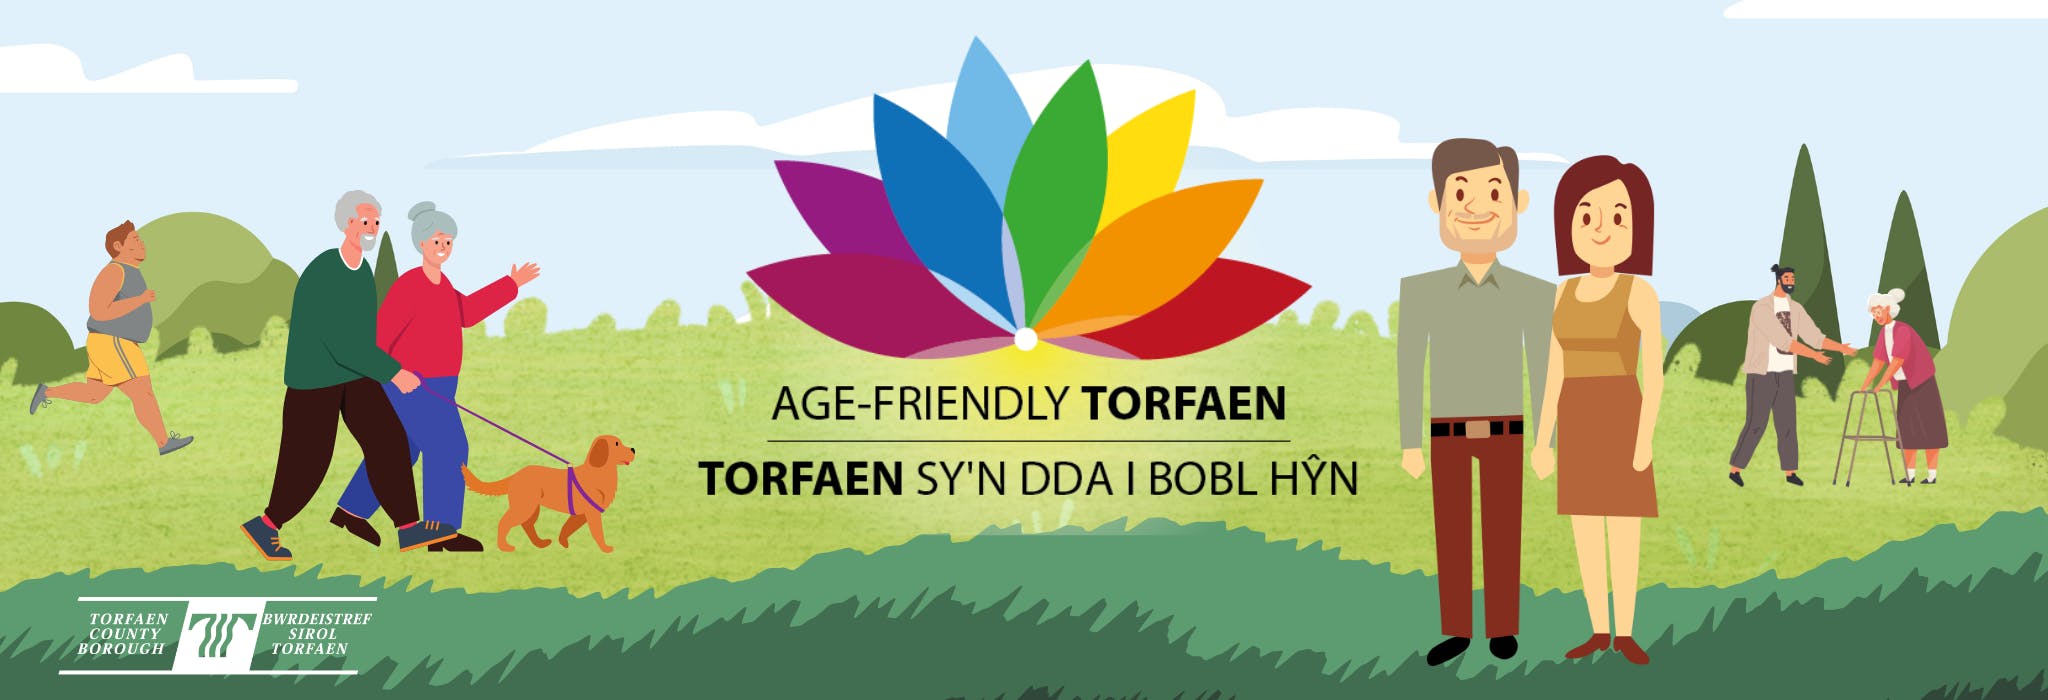 Age-friendly Torfaen banner